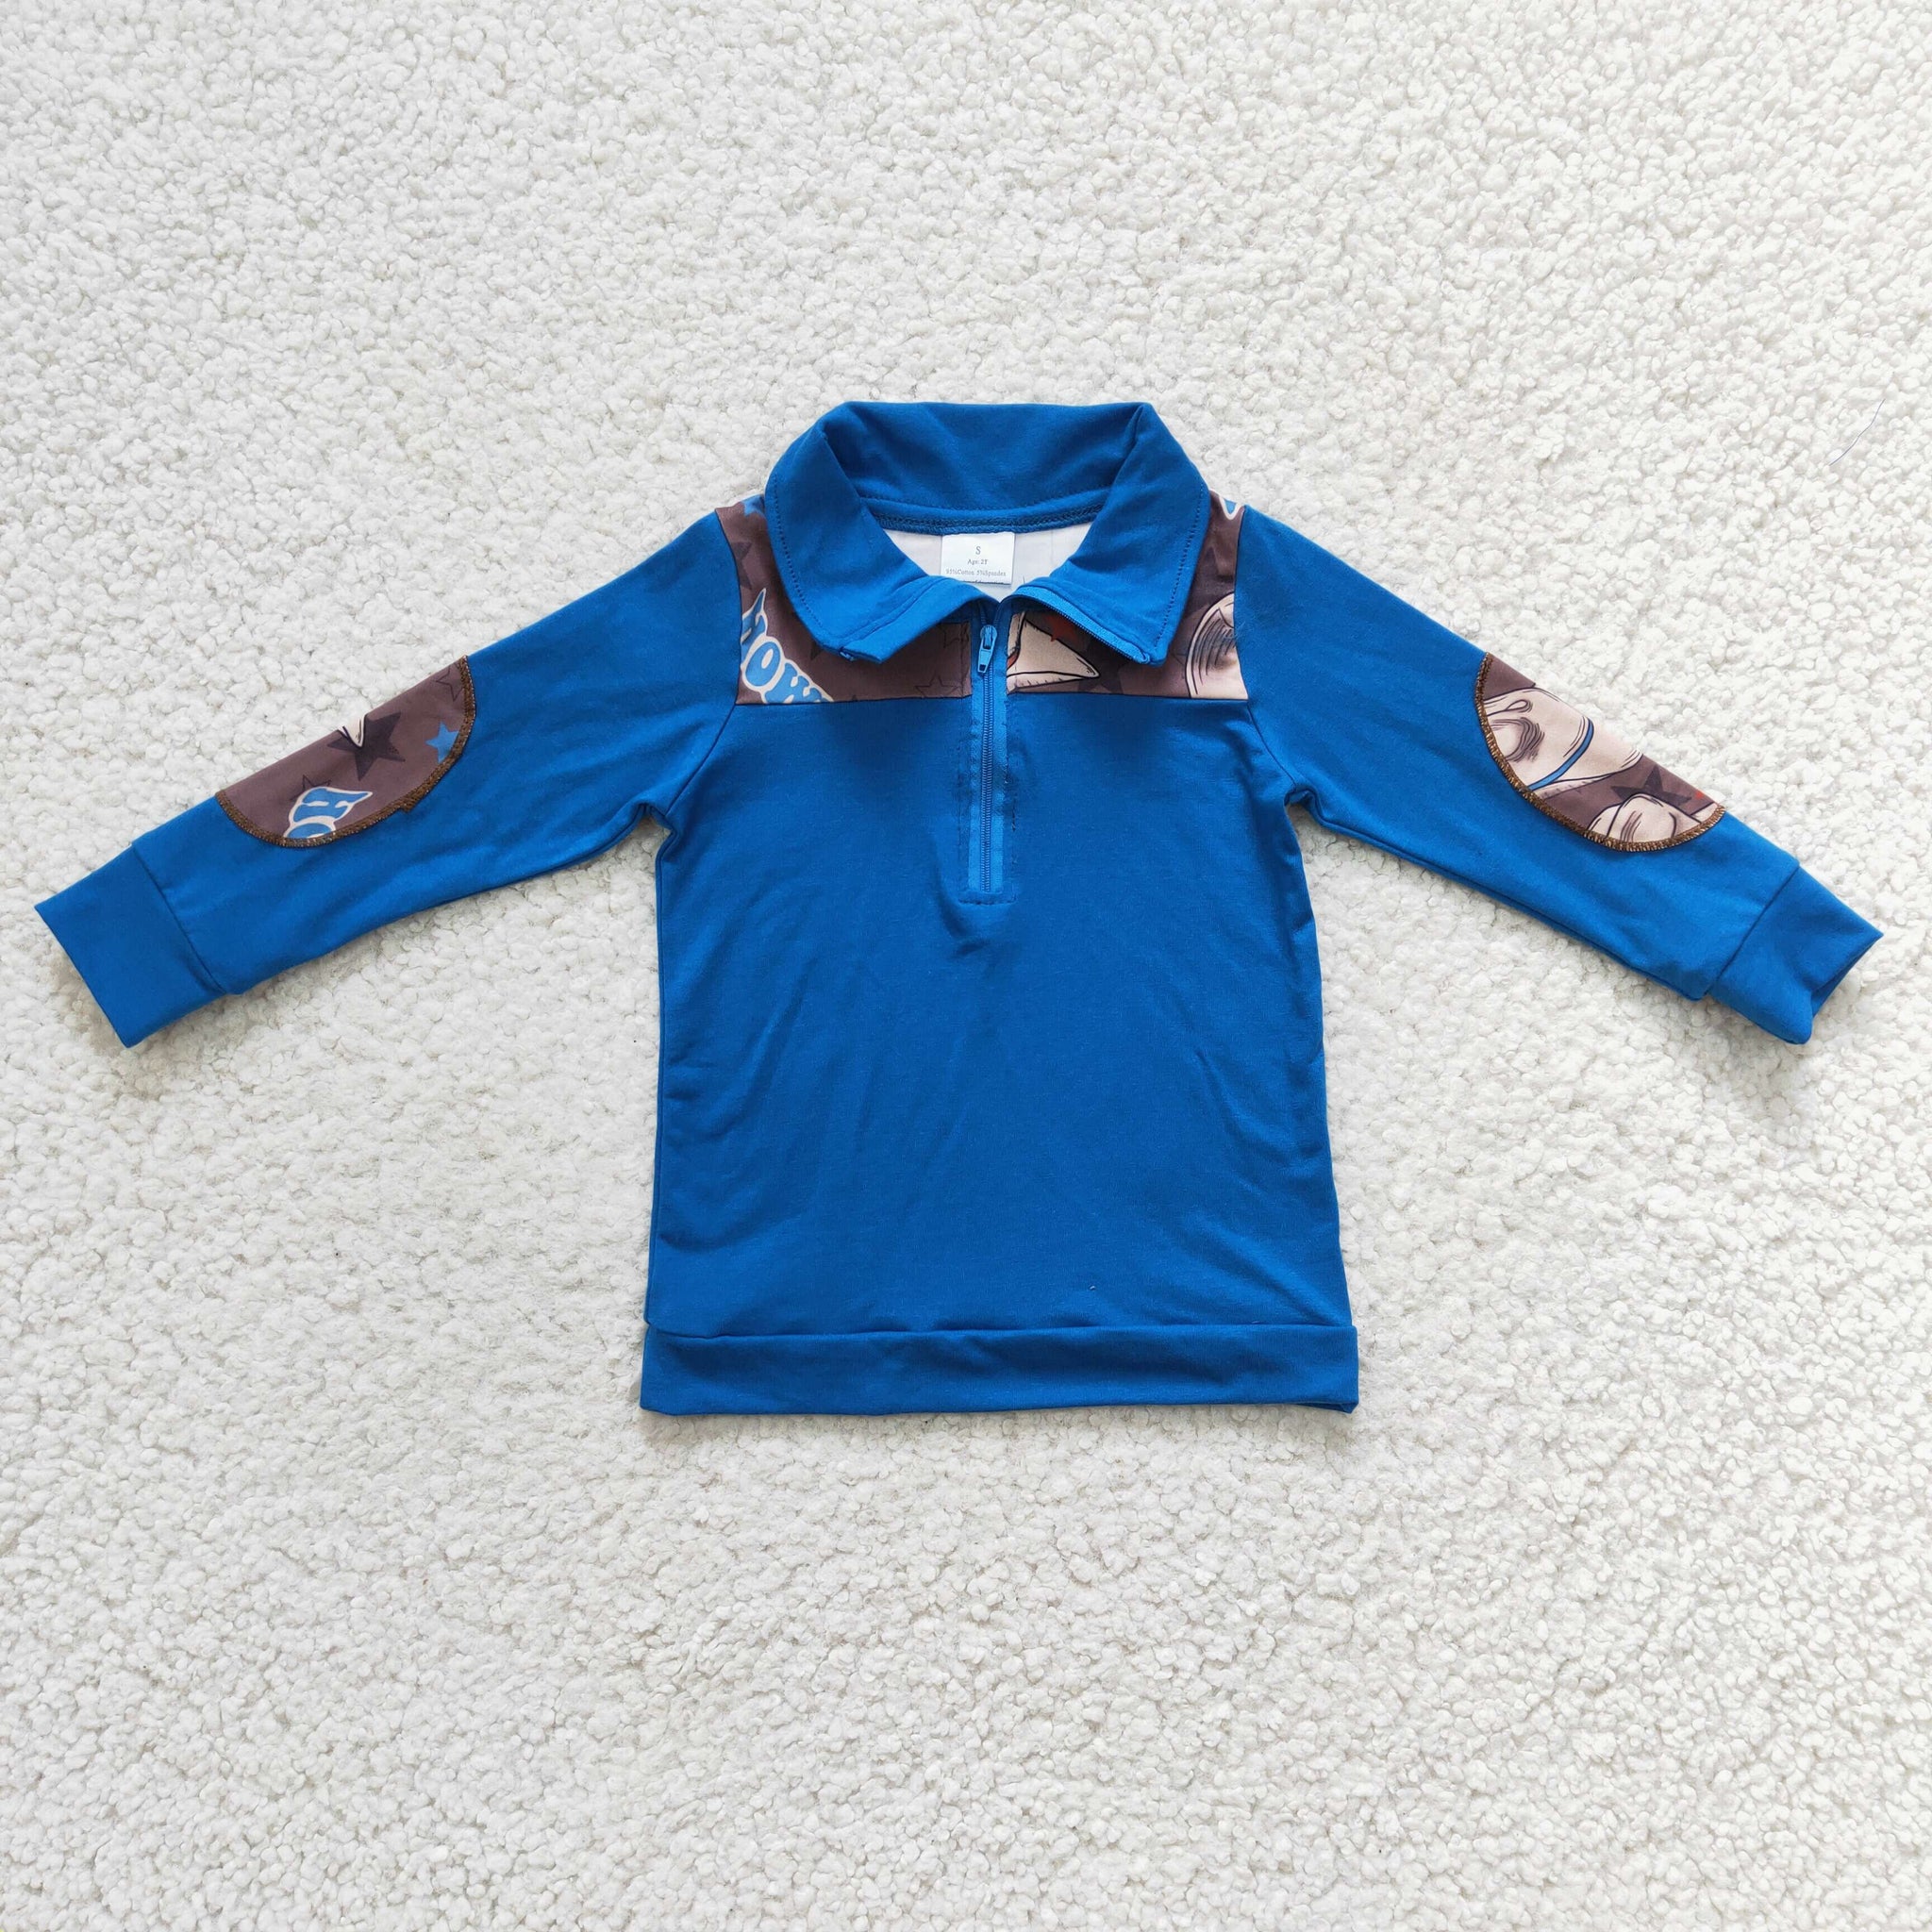 BT0101 baby boy clothes blue zipper winter top